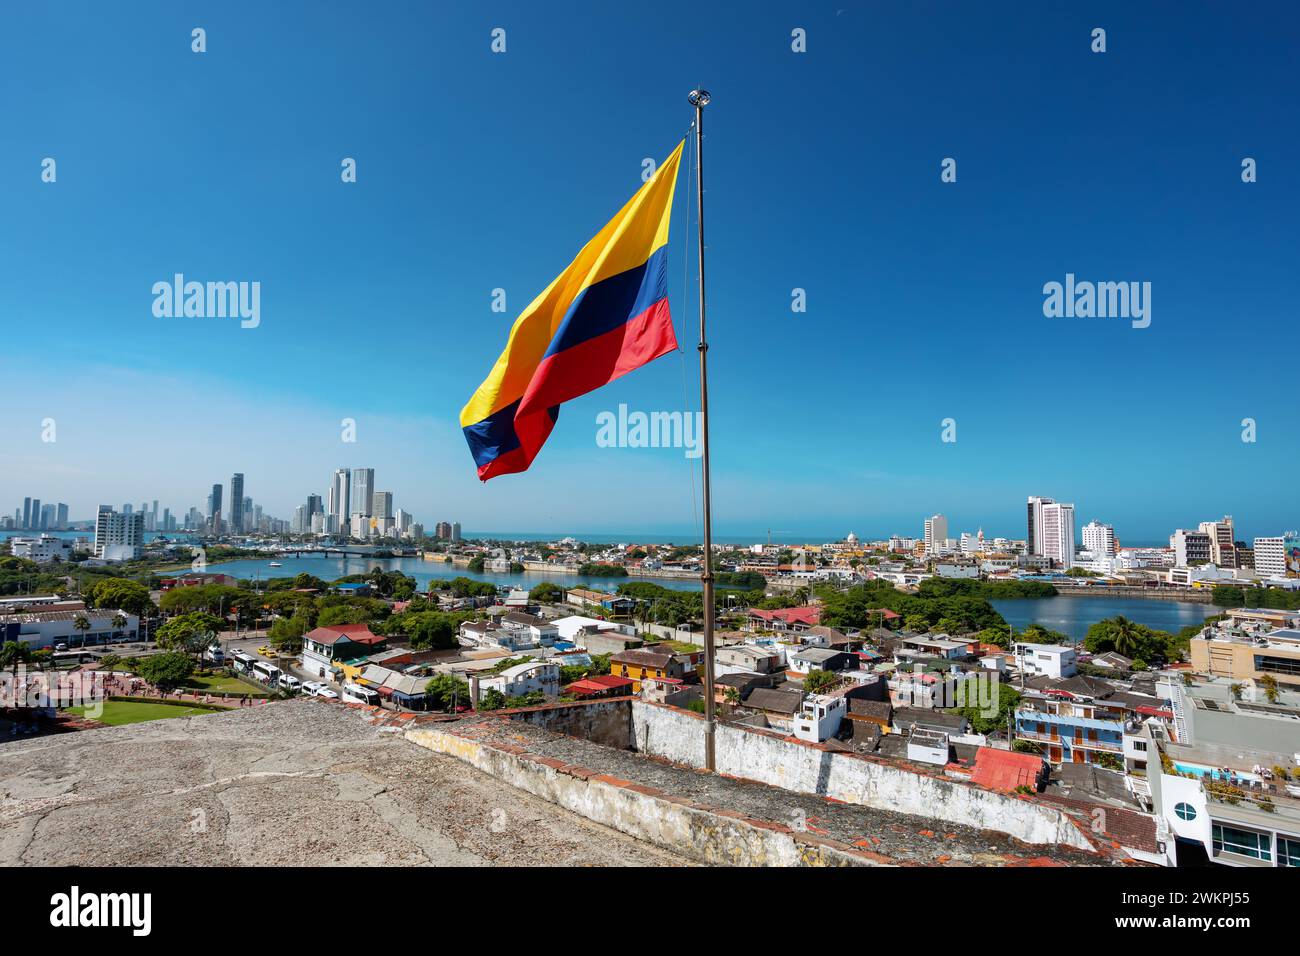 Städtische Skyline der Stadt Cartagena de Indias an der Karibikküste Kolumbiens. Vor kolumbianischer Flagge. Blick von der Festung San Felipe de Barajas. Stockfoto